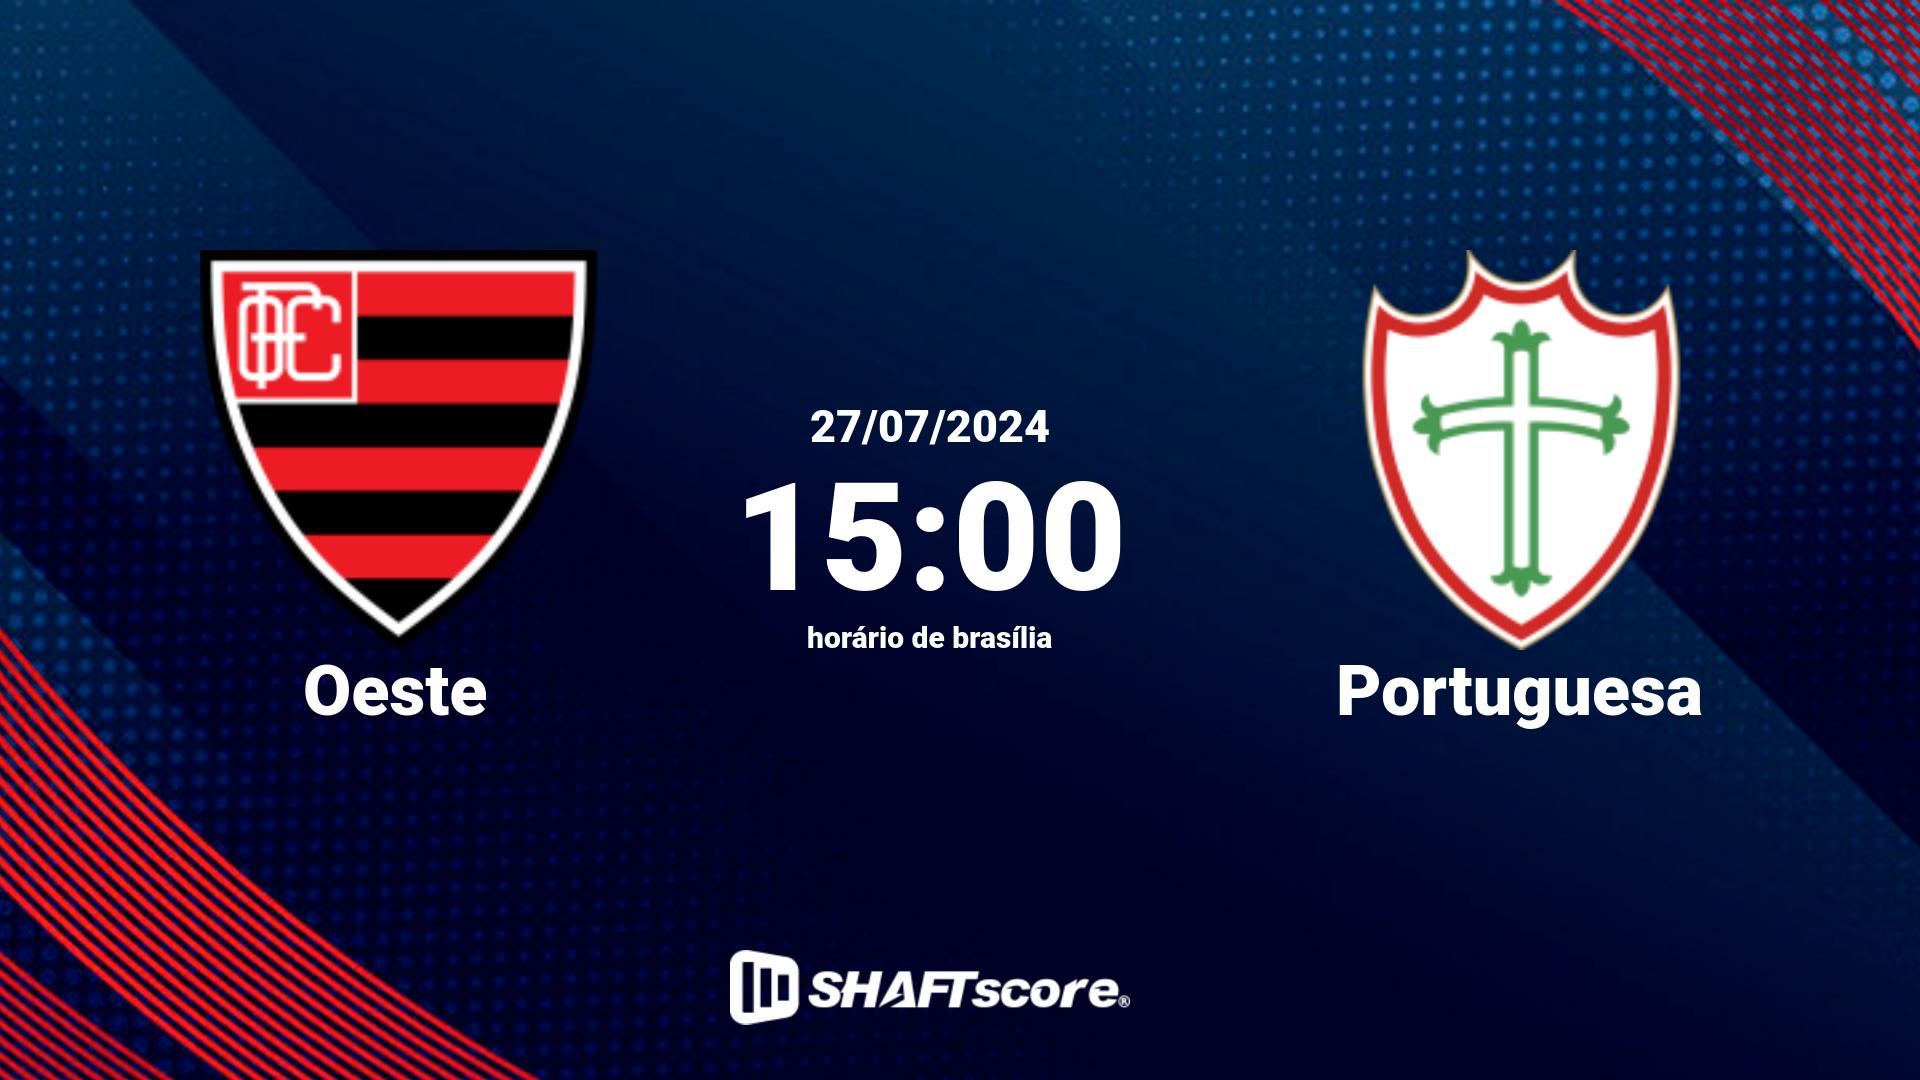 Estatísticas do jogo Oeste vs Portuguesa 27.07 15:00